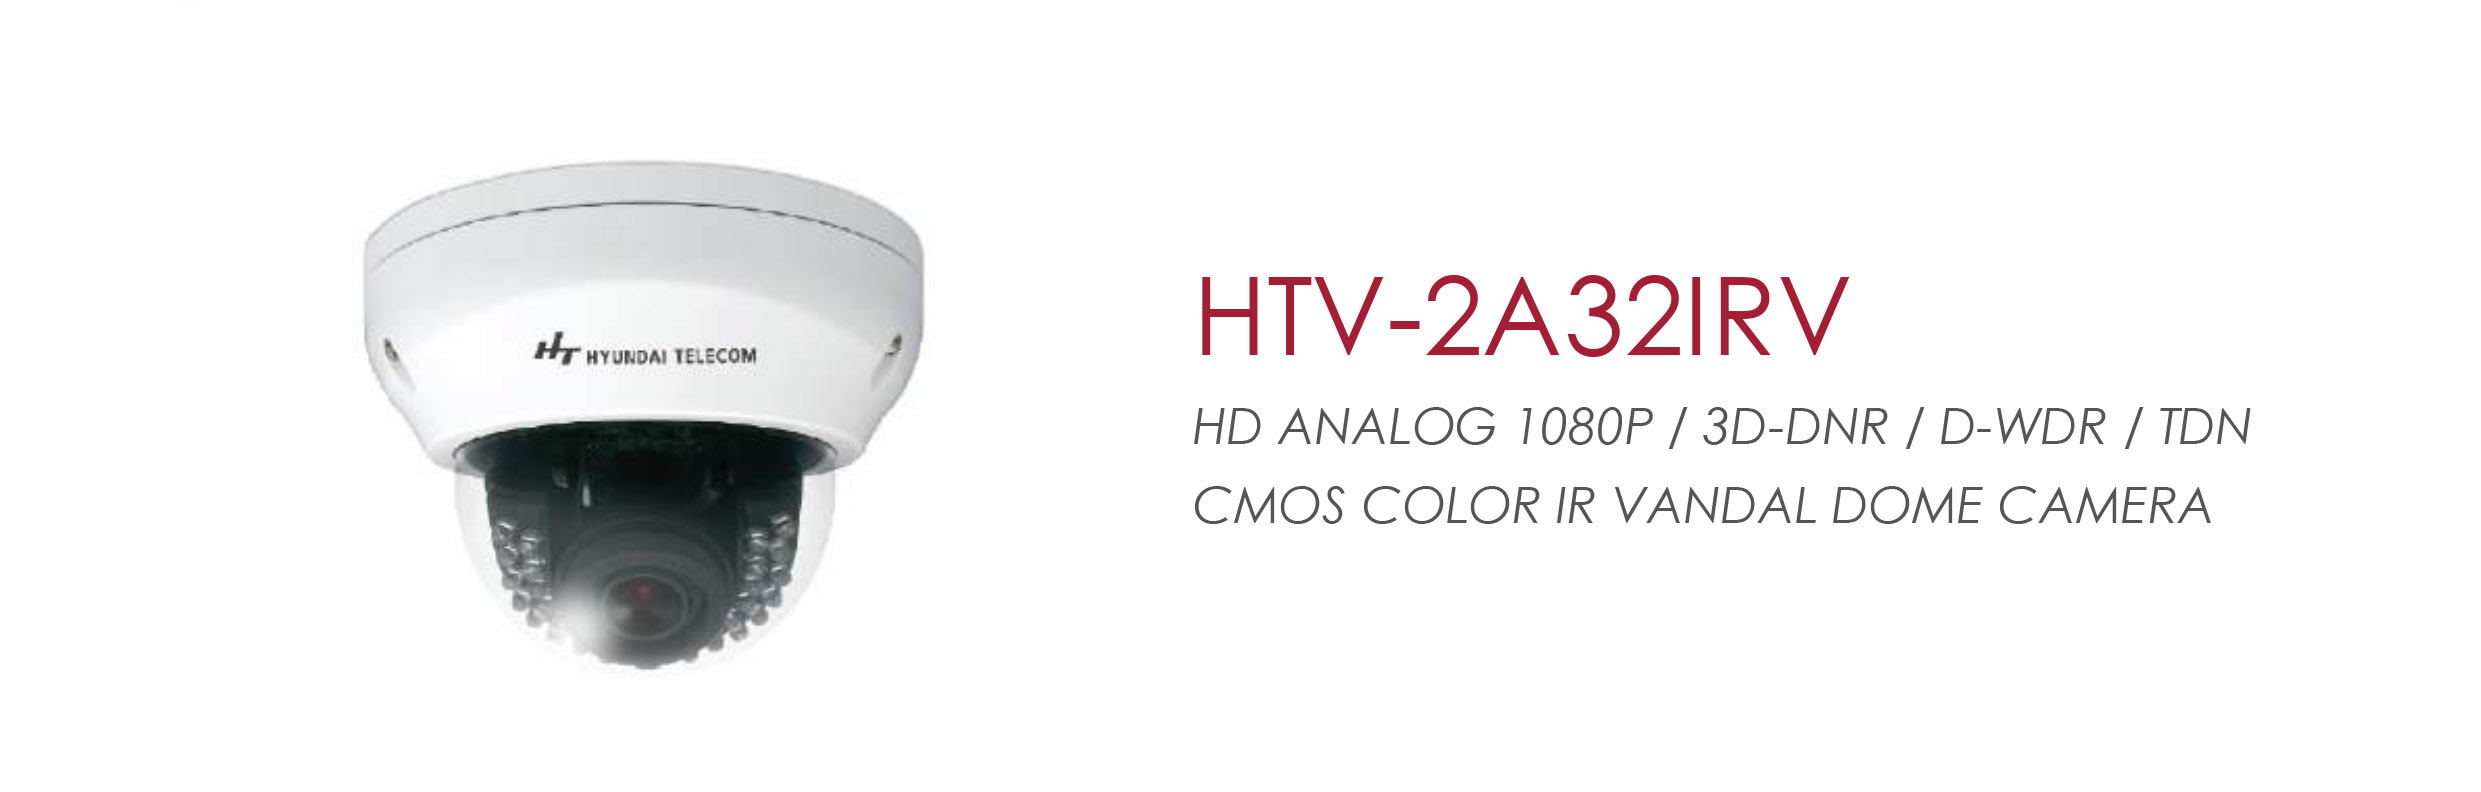 HTV-2A32IRV